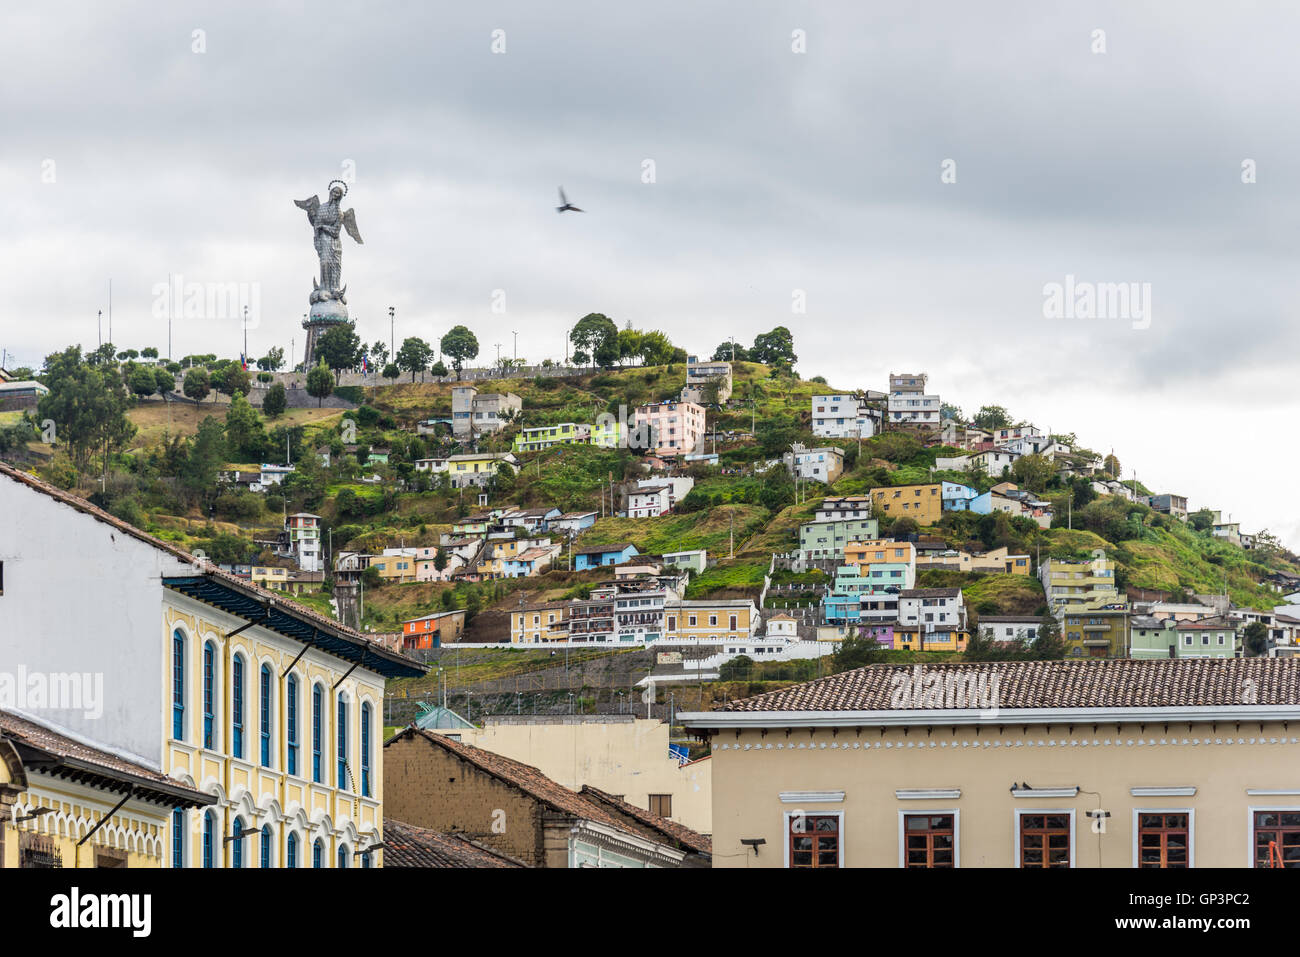 Case colorate sul lato della collina in cui la Vergine Maria statua in piedi. Quito, Ecuador. Foto Stock